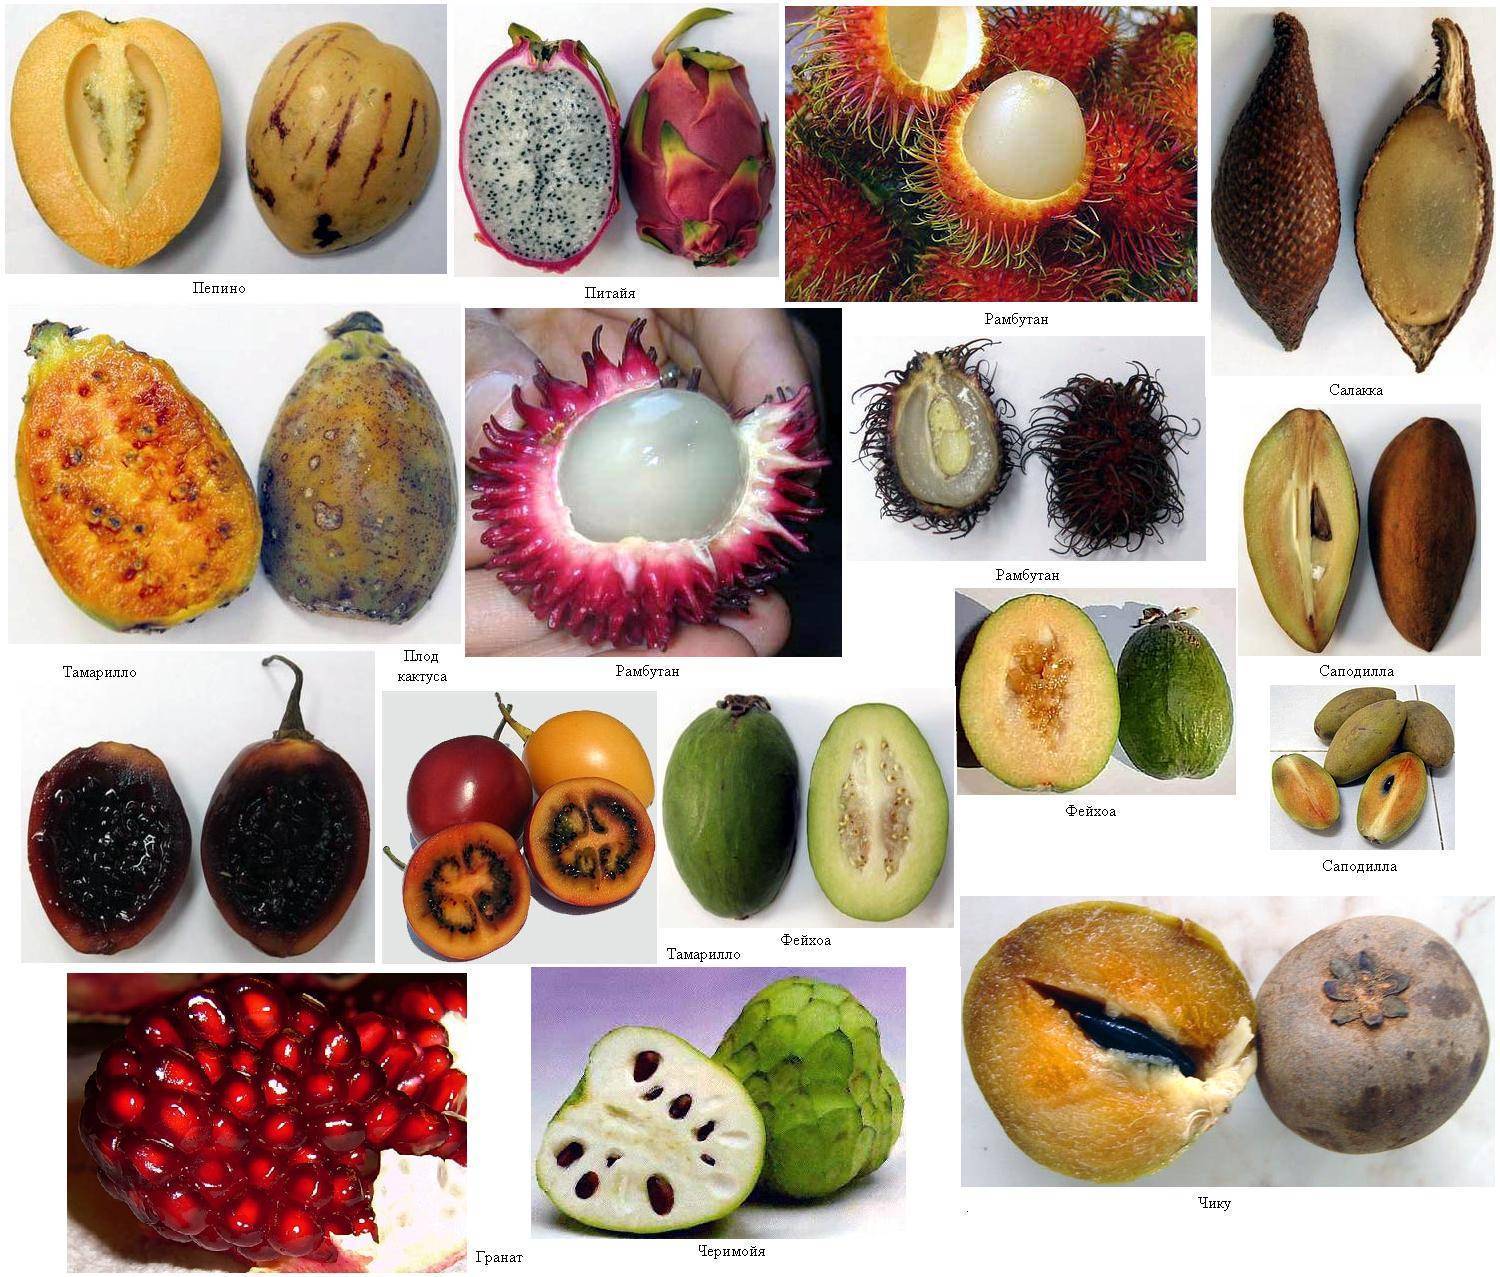 Экзотические фрукты Азии: фото, названия, описания